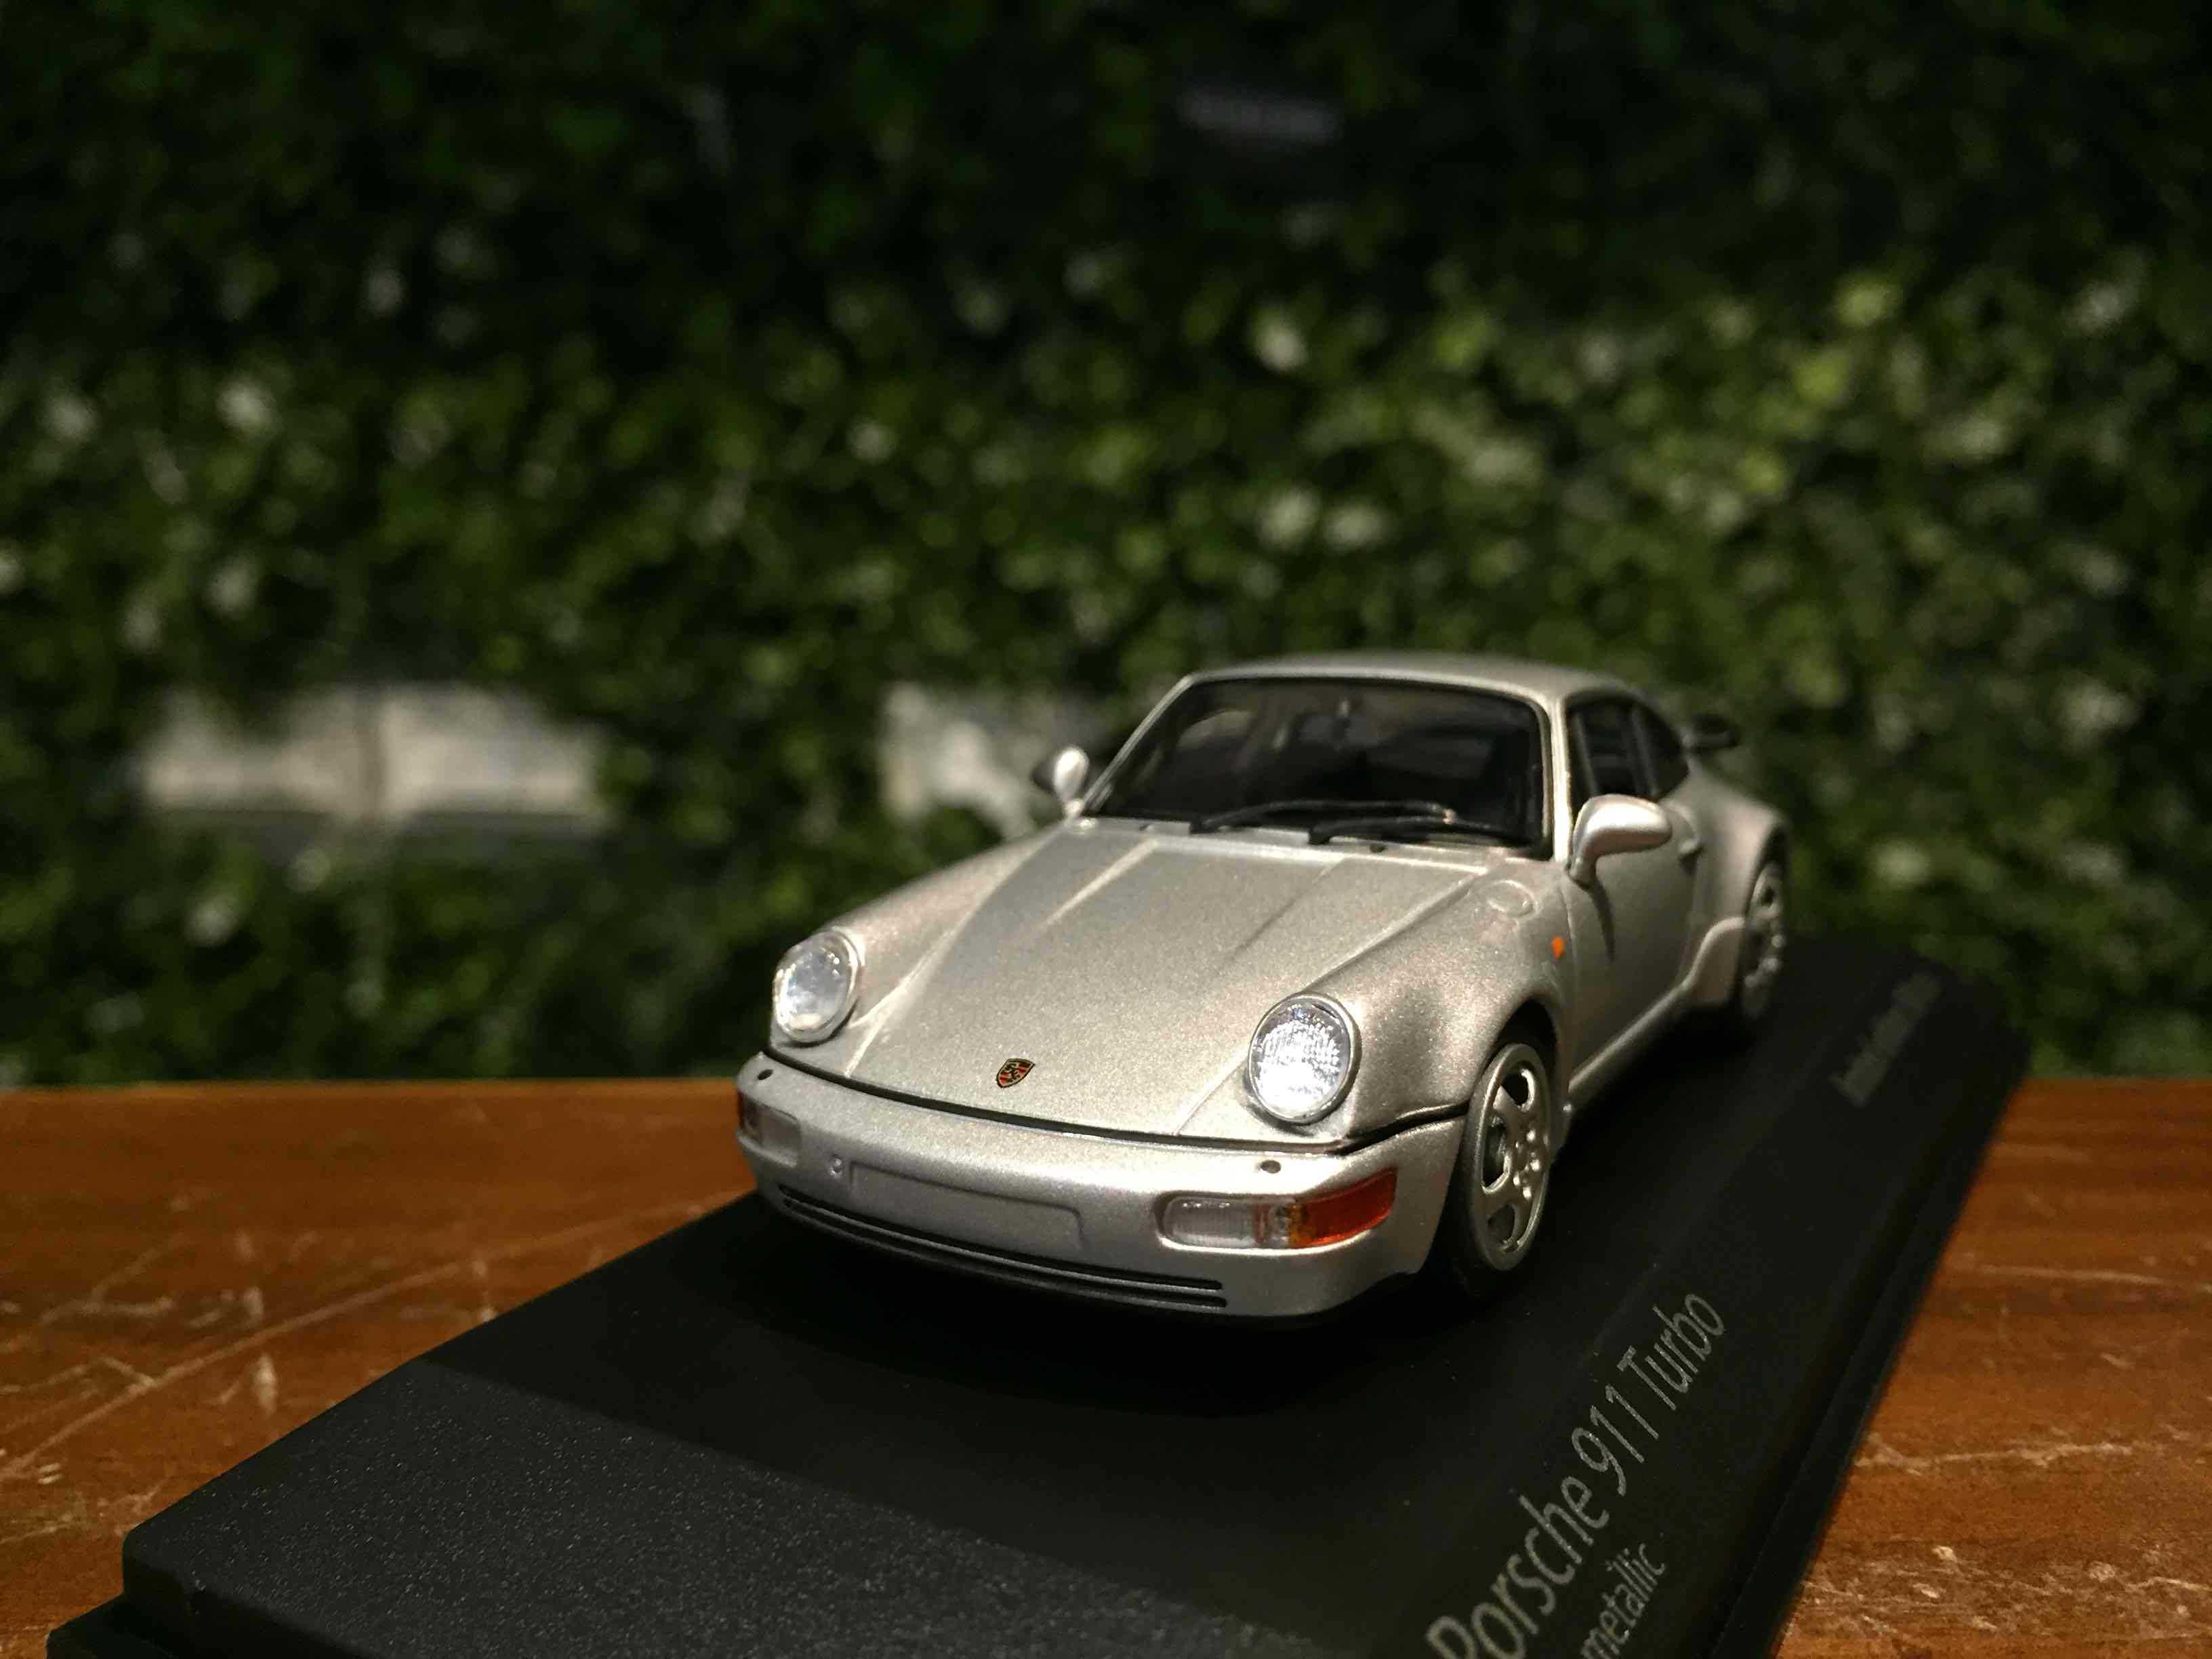 1/43 Minichamps Porsche 911 (964) Turbo 1990 943069104【MGM】